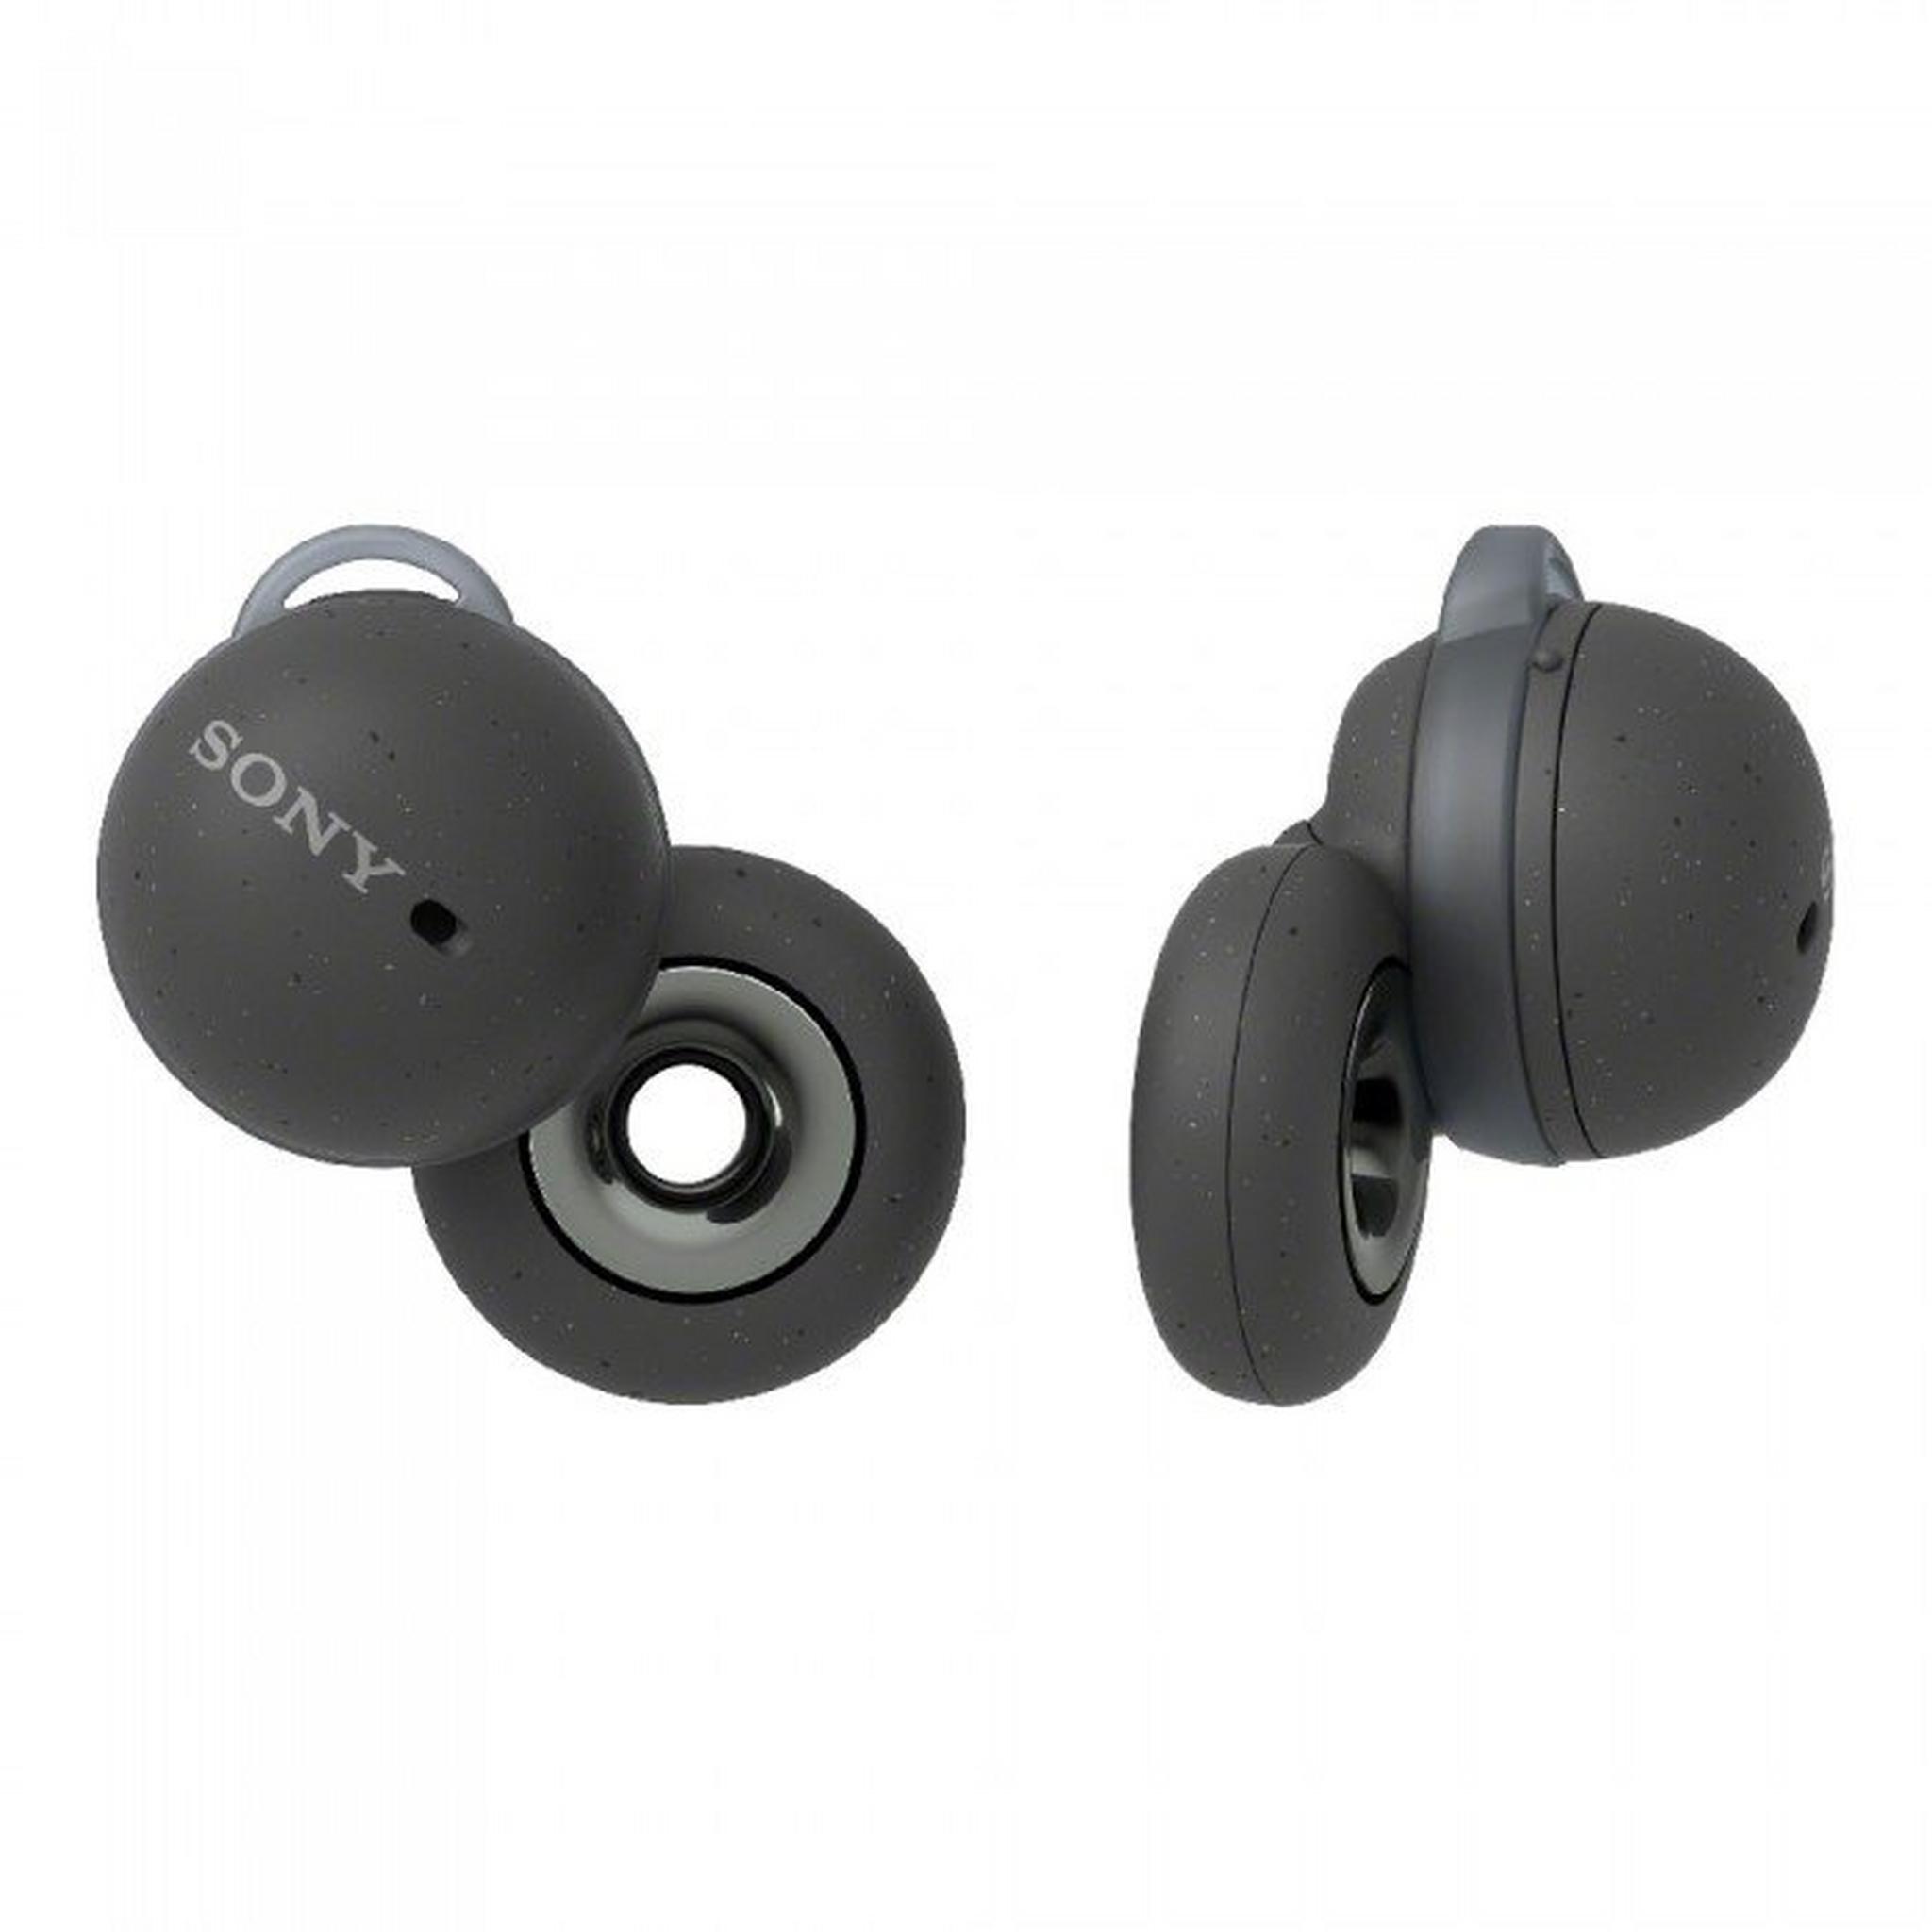 Sony LinkBuds True Wireless Earbuds - Black